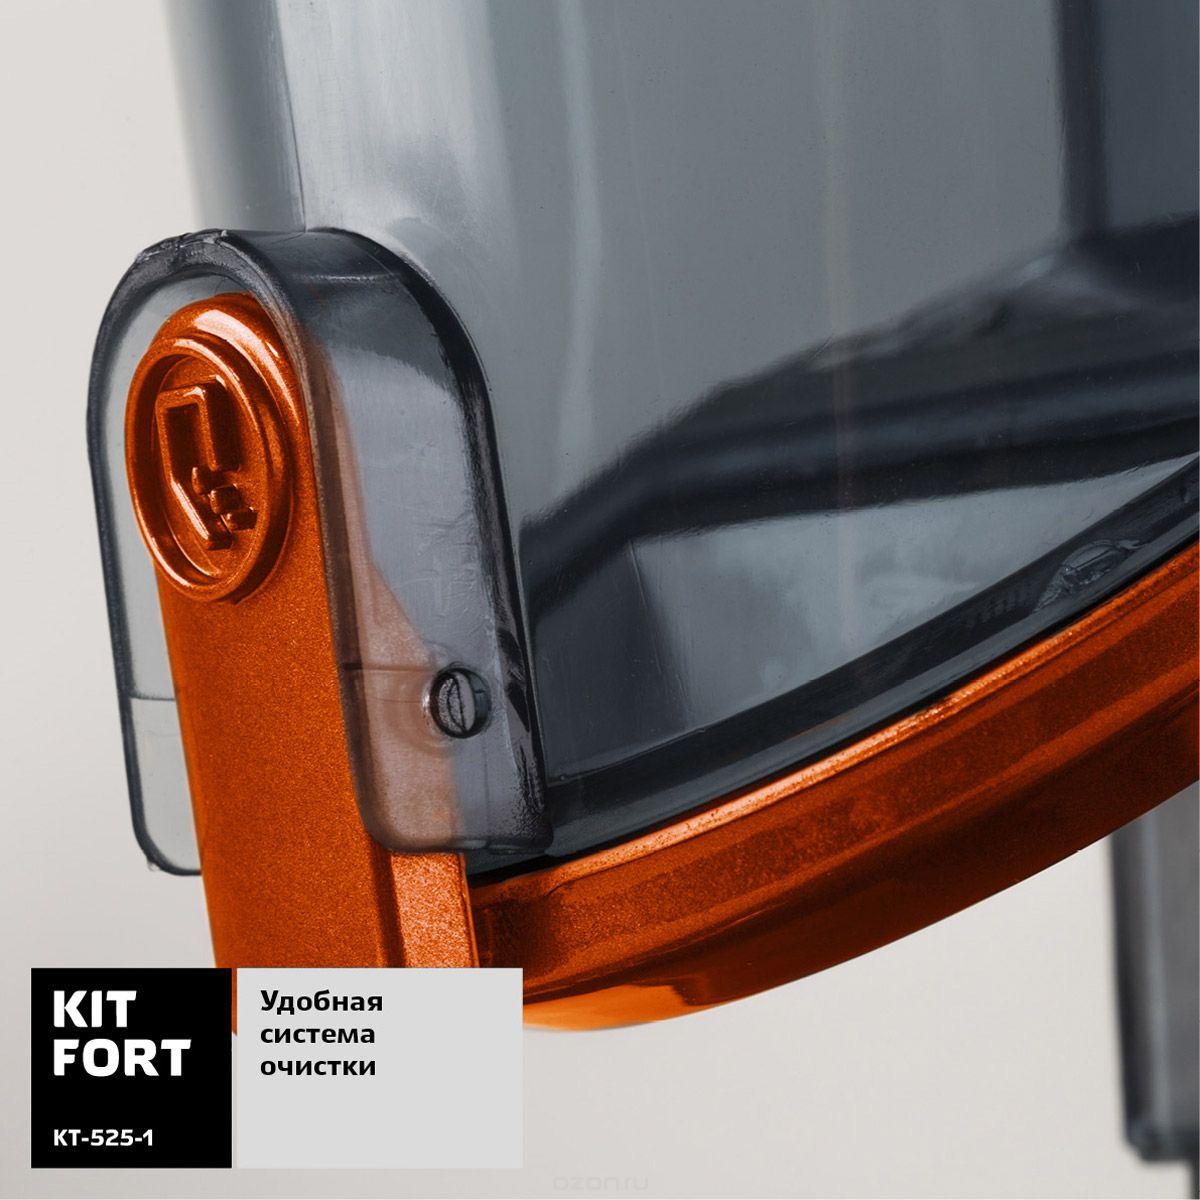   Kitfort -525, Orange